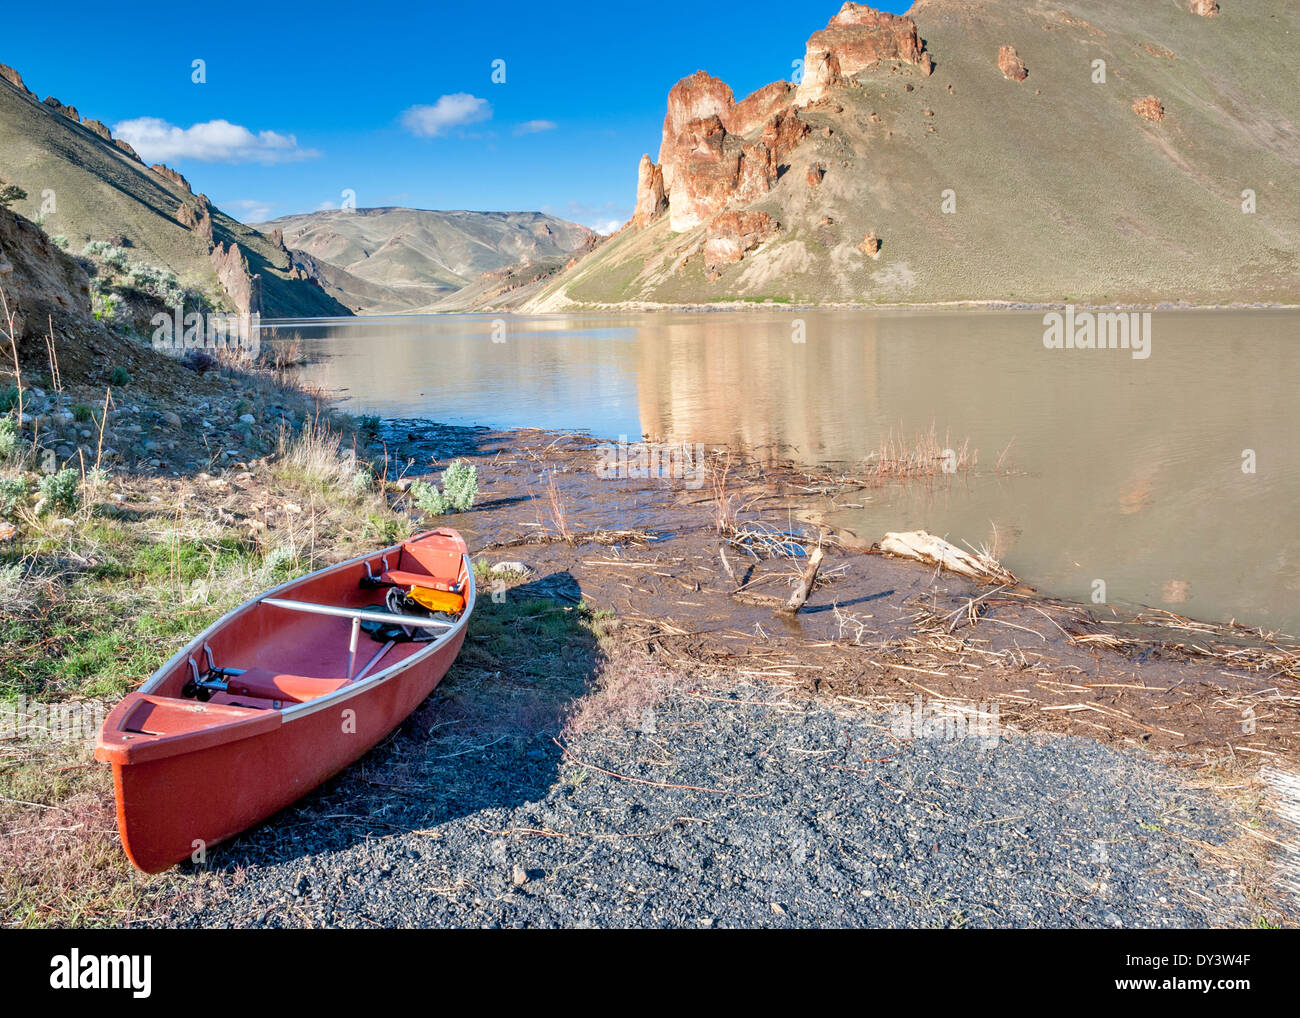 Kanu geparkt am Ufer eines Sees Stockfoto